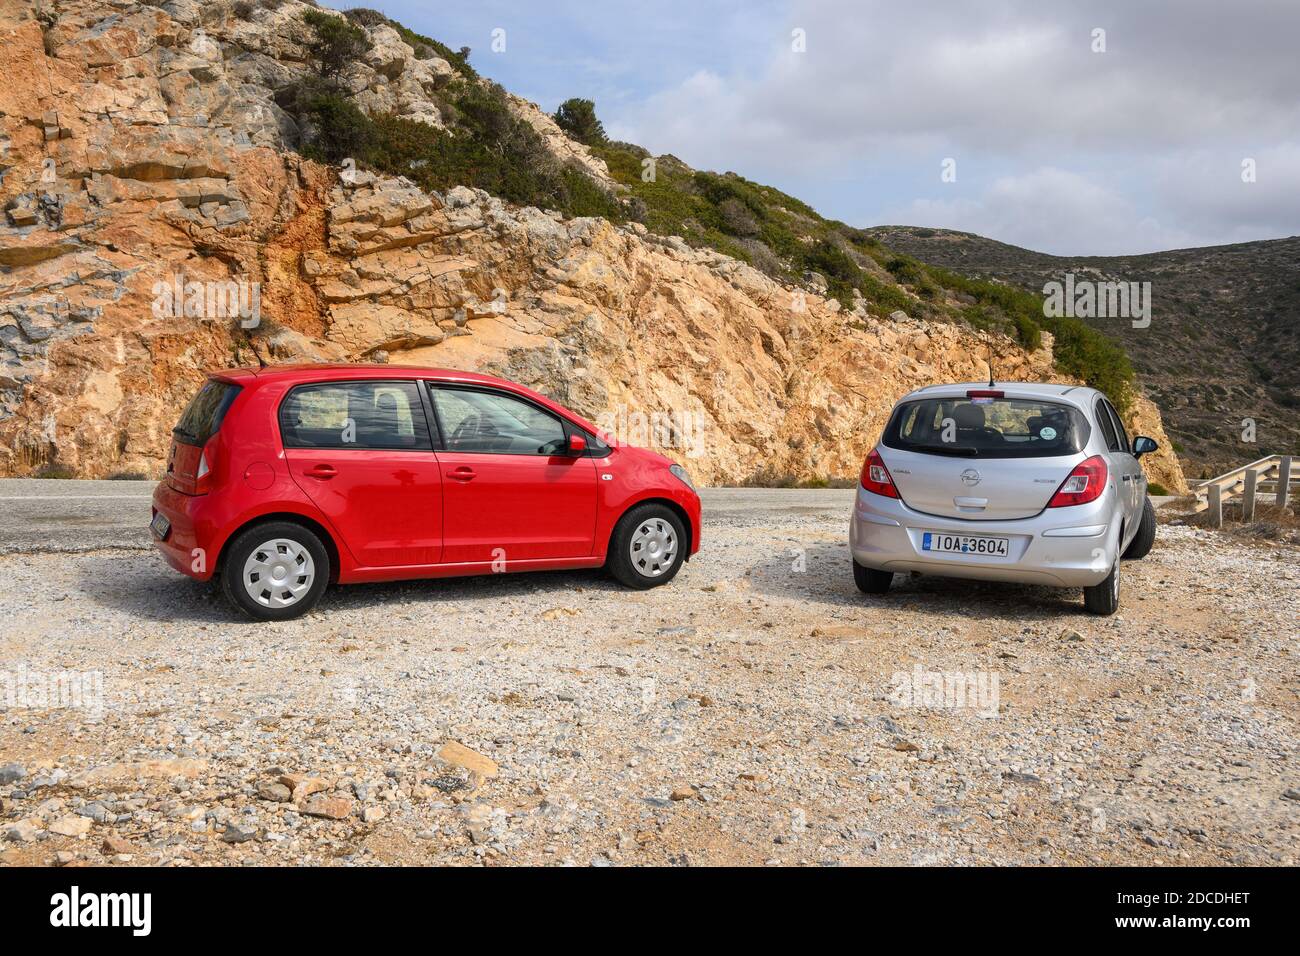 IOS, Grèce - 20 septembre 2020 : Opel Corsa et Seat Mii sur la route dans la partie montagneuse de l'île d'iOS. Cyclades, Grèce Banque D'Images